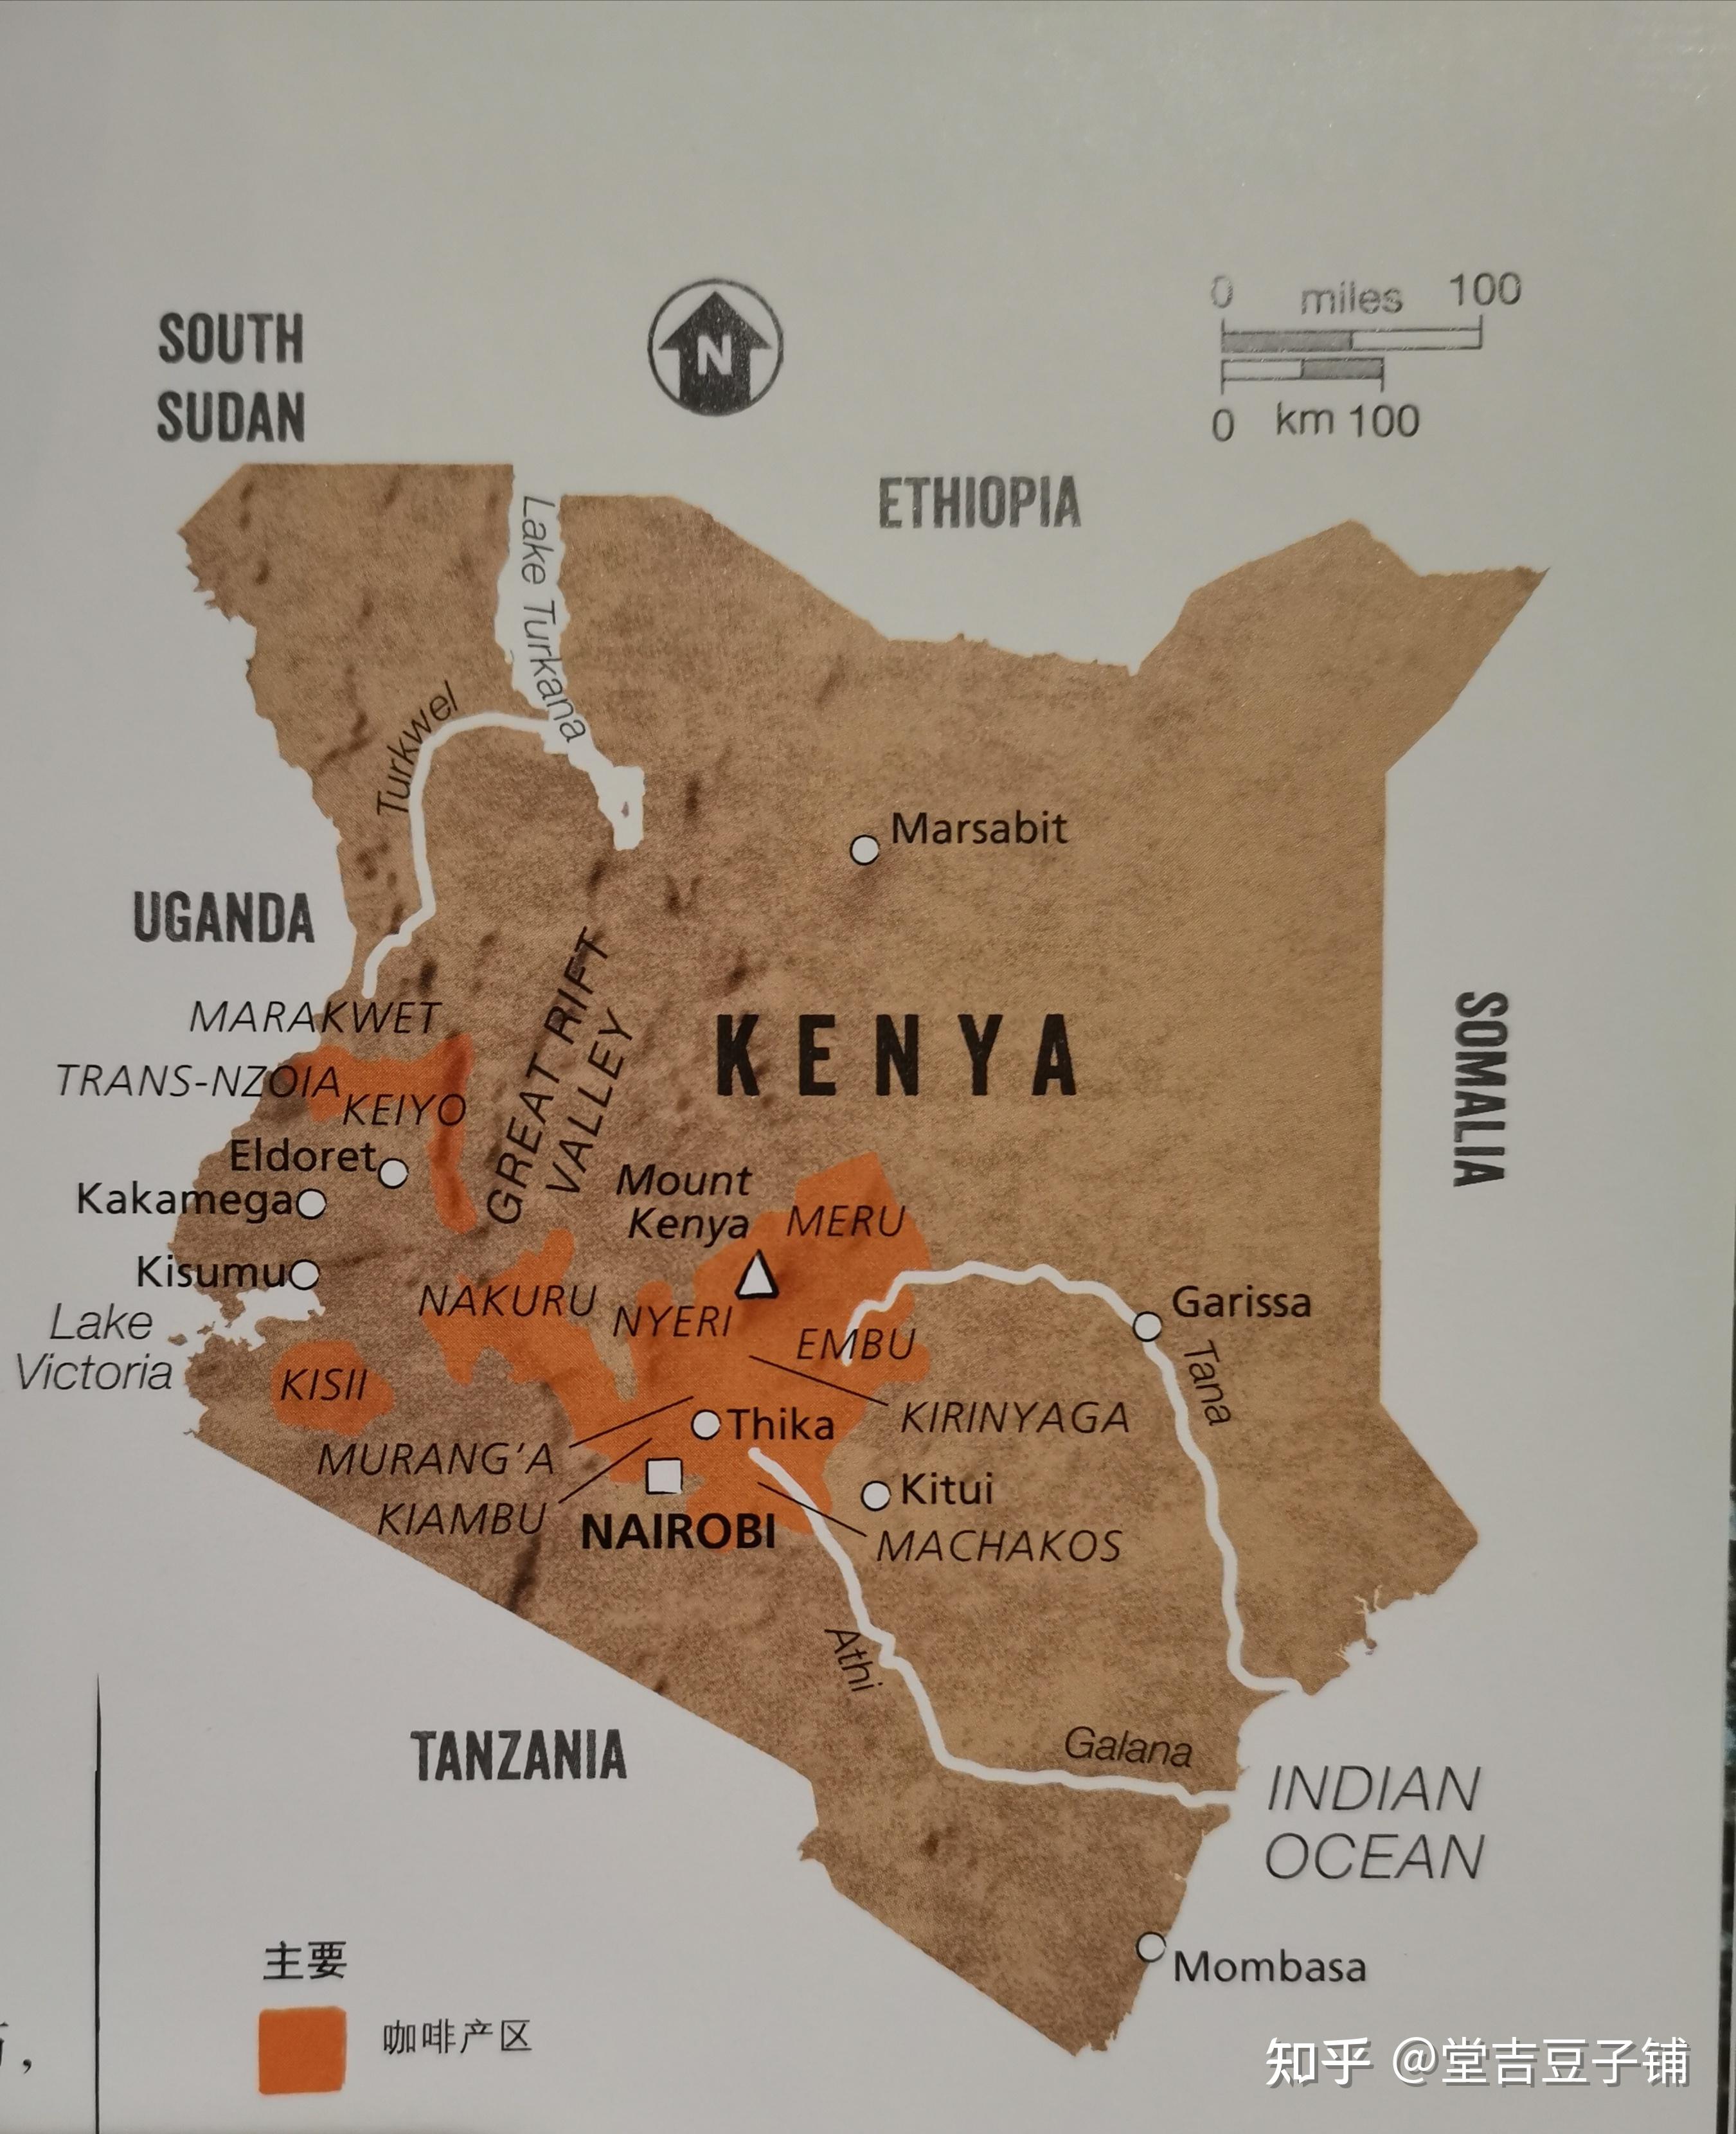 肯尼亚咖啡的分级制度及豆种